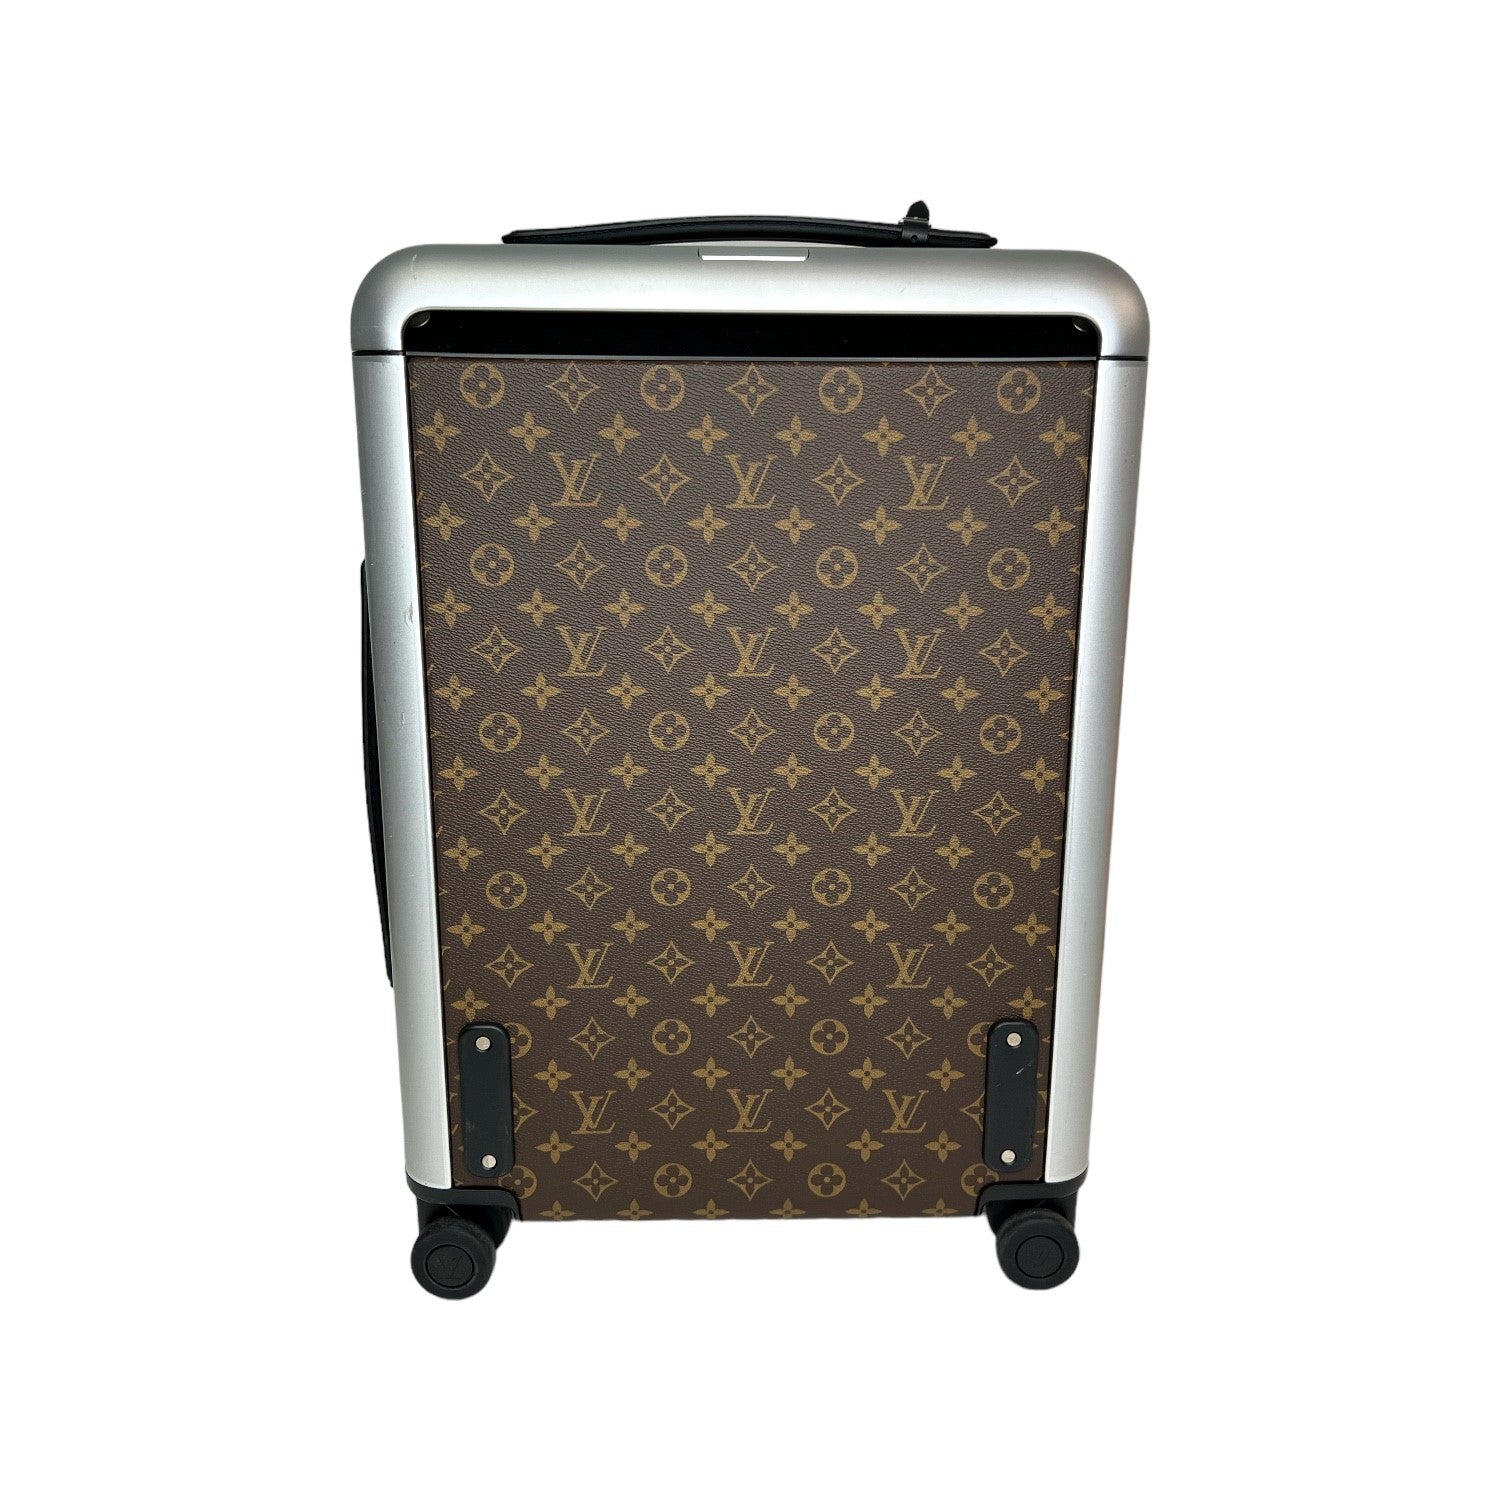 Louis Vuitton Orange Empreinte Leather Horizon 55 Suitcase Louis Vuitton